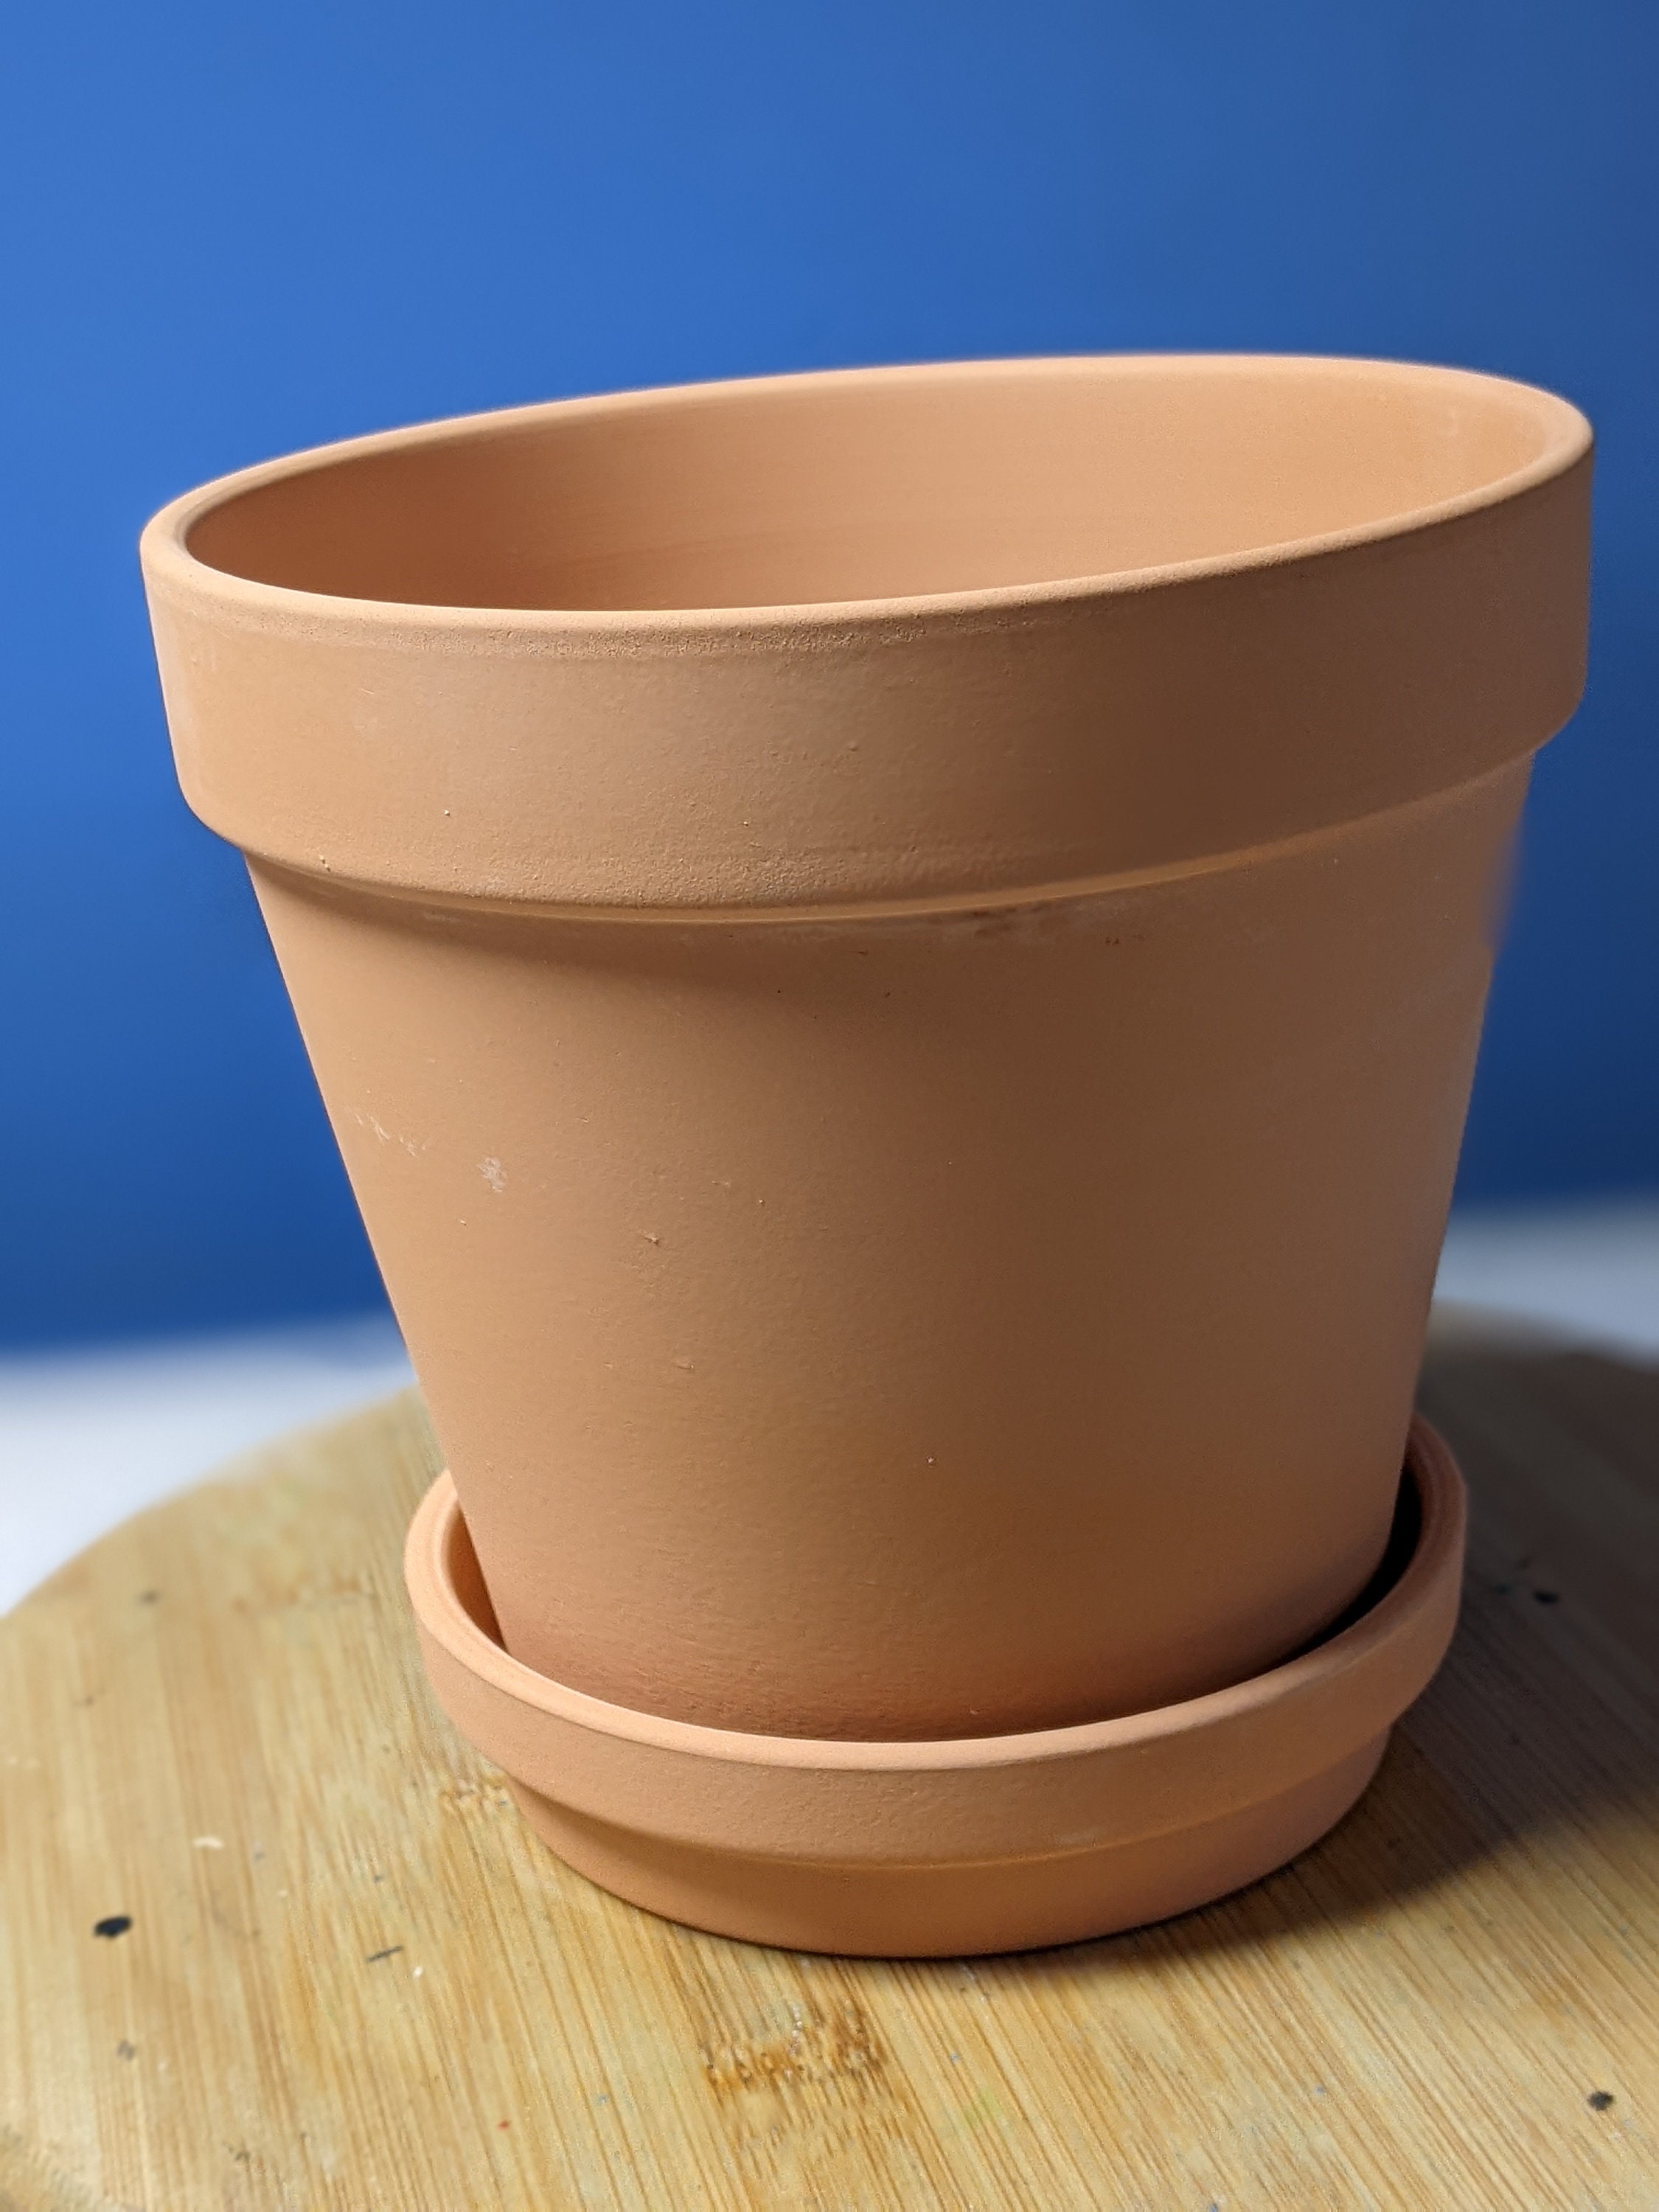 Deroma Terra Cotta Clay Standard Pot 4.5 - Hands Garden Center